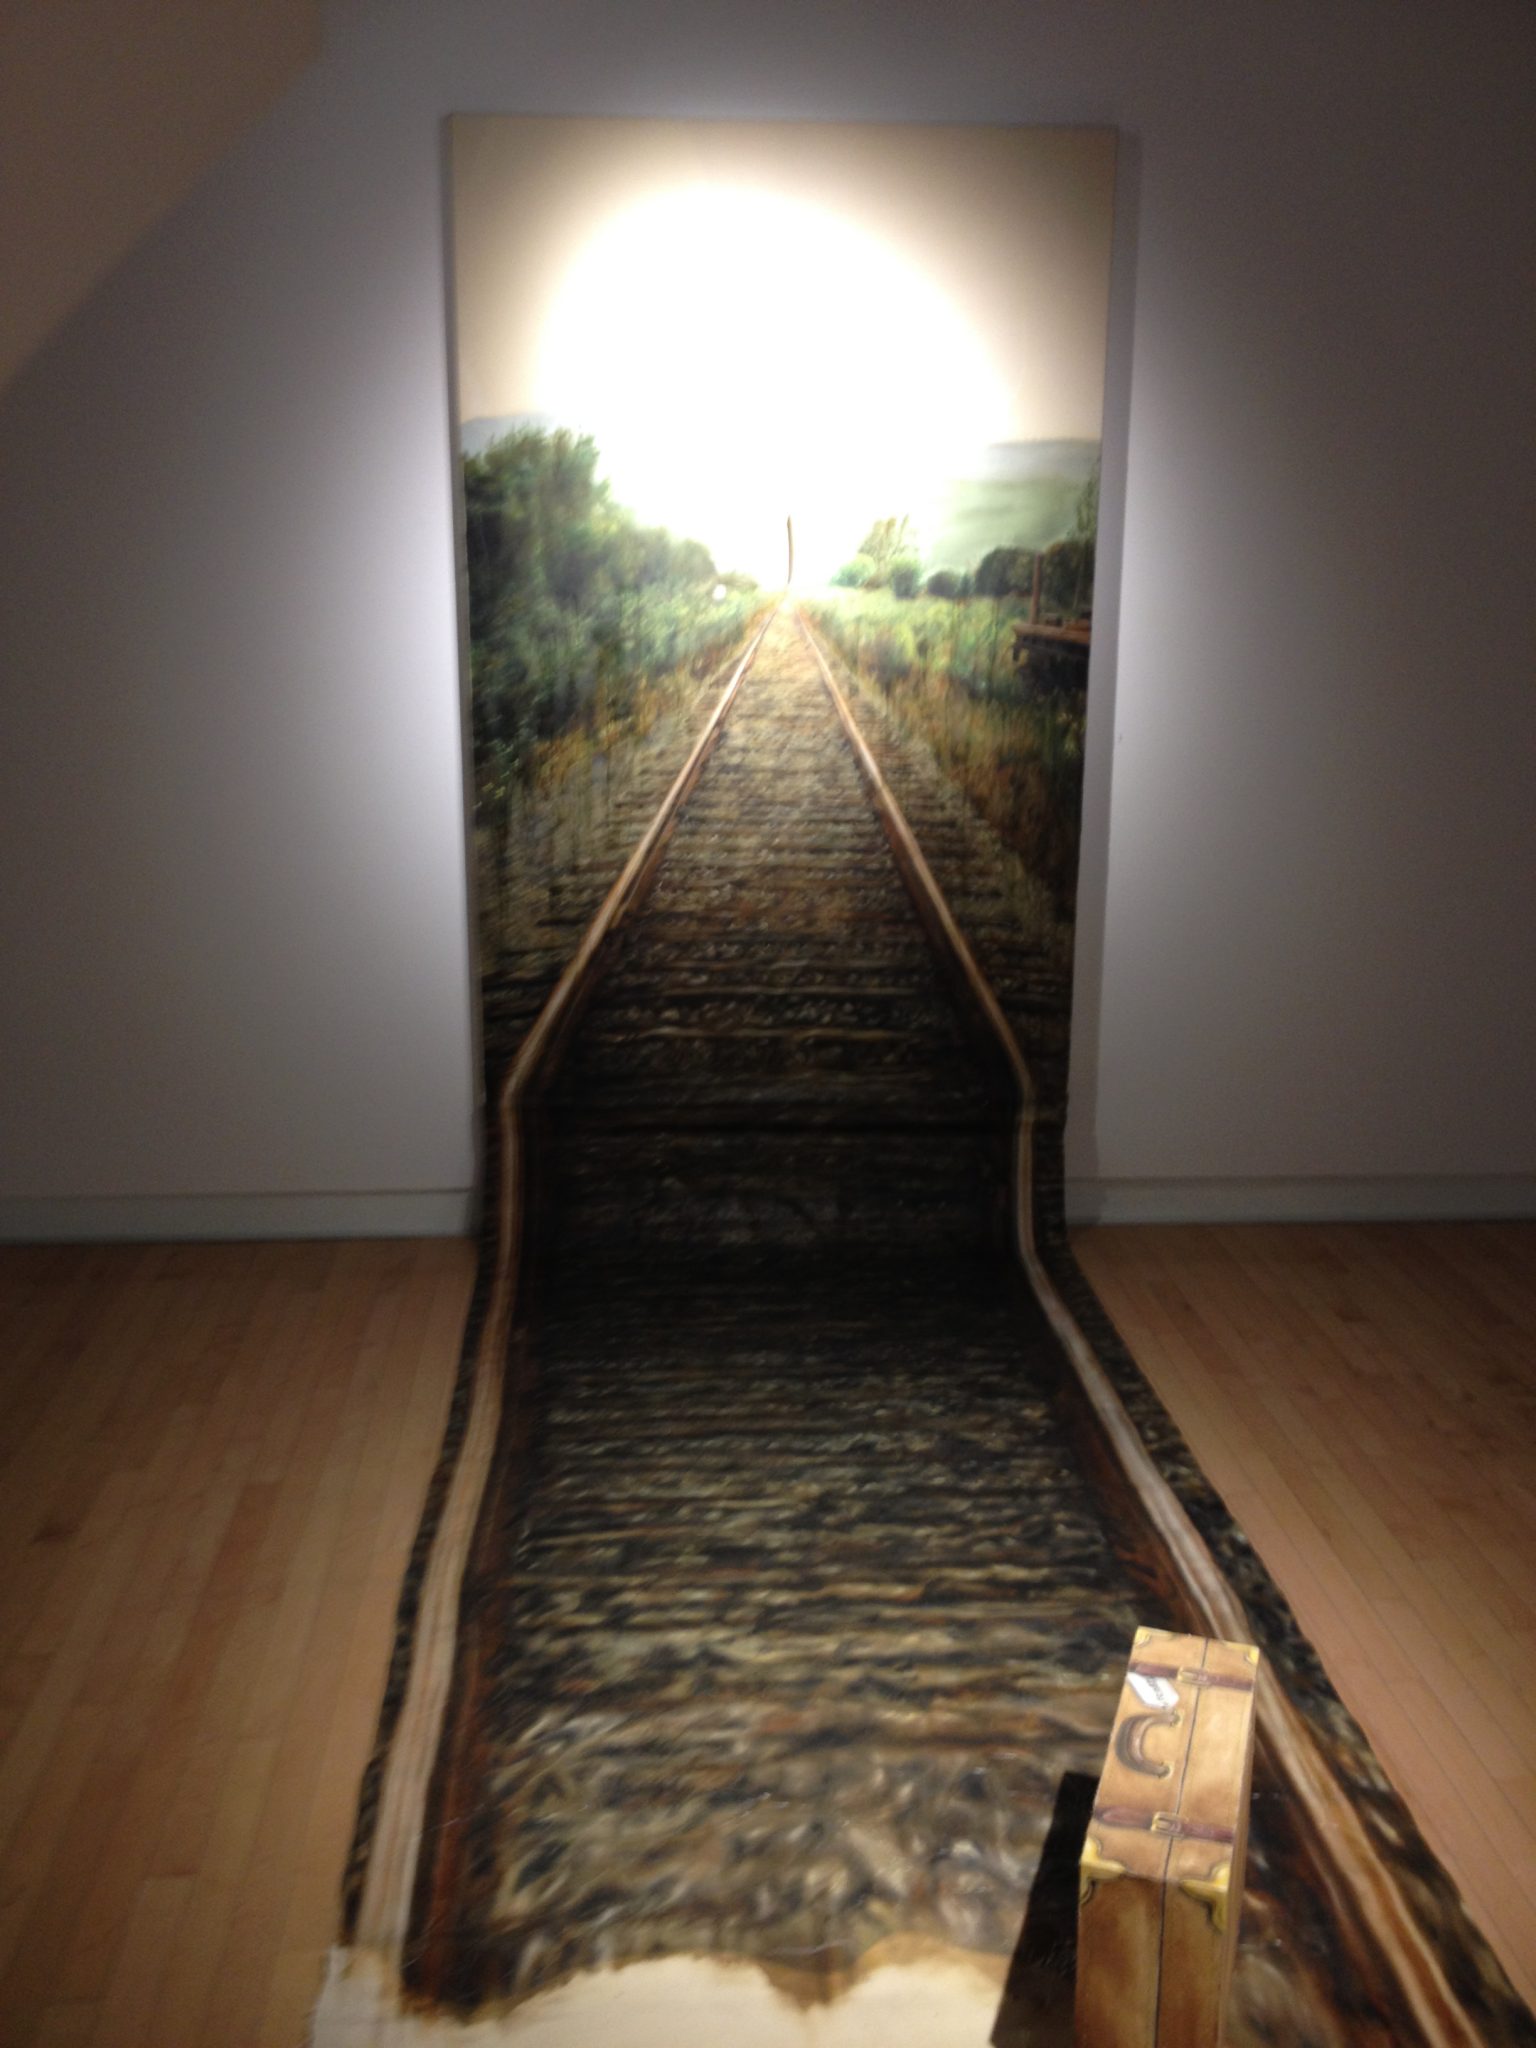 La toile sur le sol et le dispositif de ces deux œuvres conjointes accentuent l’immersion du spectateur.Photo: M.-C. Perras